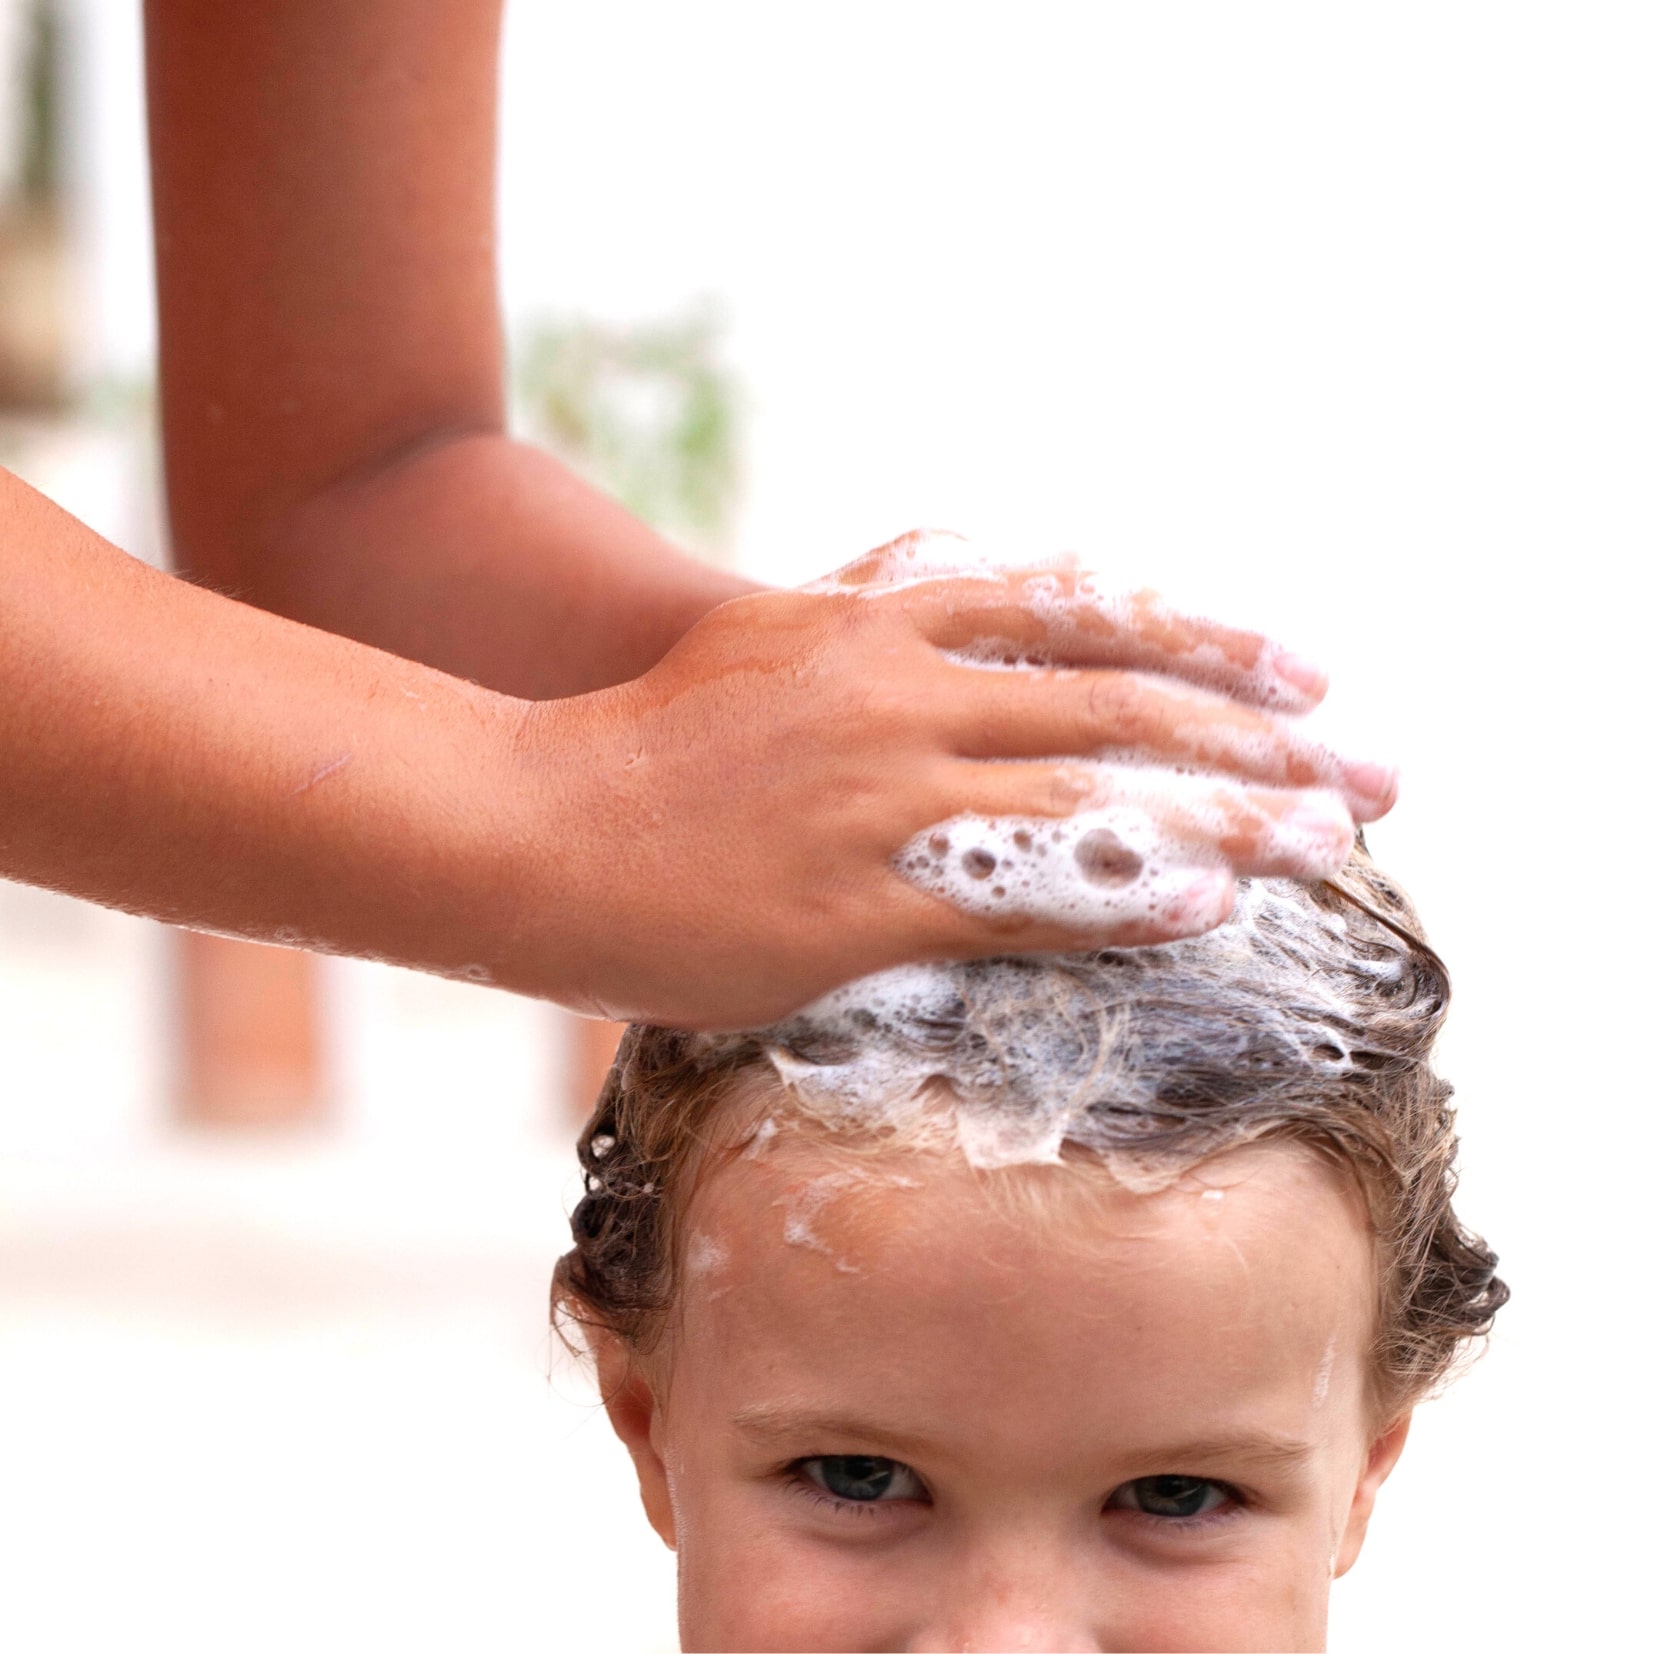 Expert tips: Children's hair